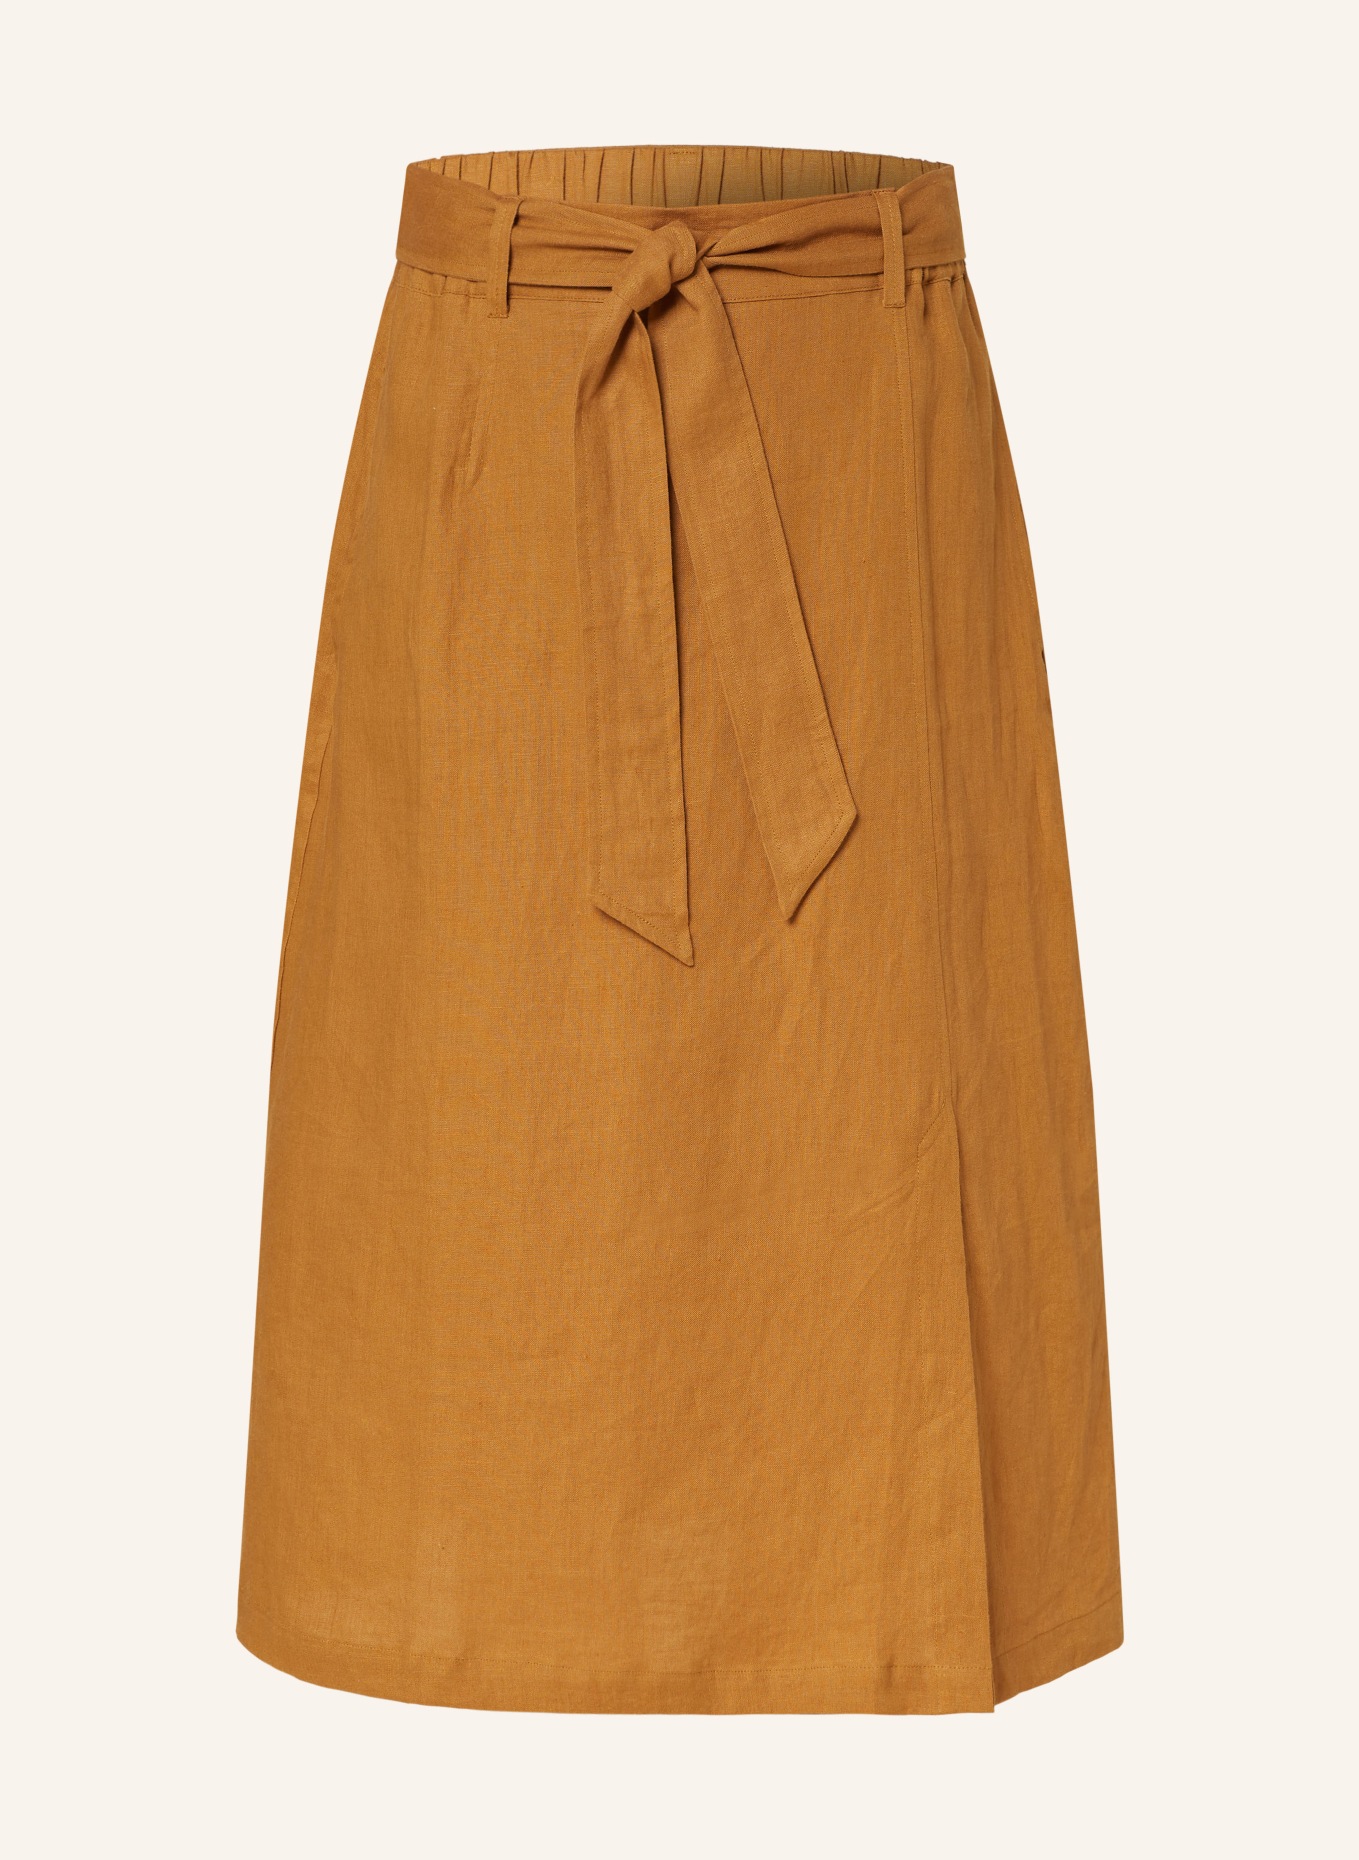 MAERZ MUENCHEN Linen skirt, Color: COGNAC (Image 1)